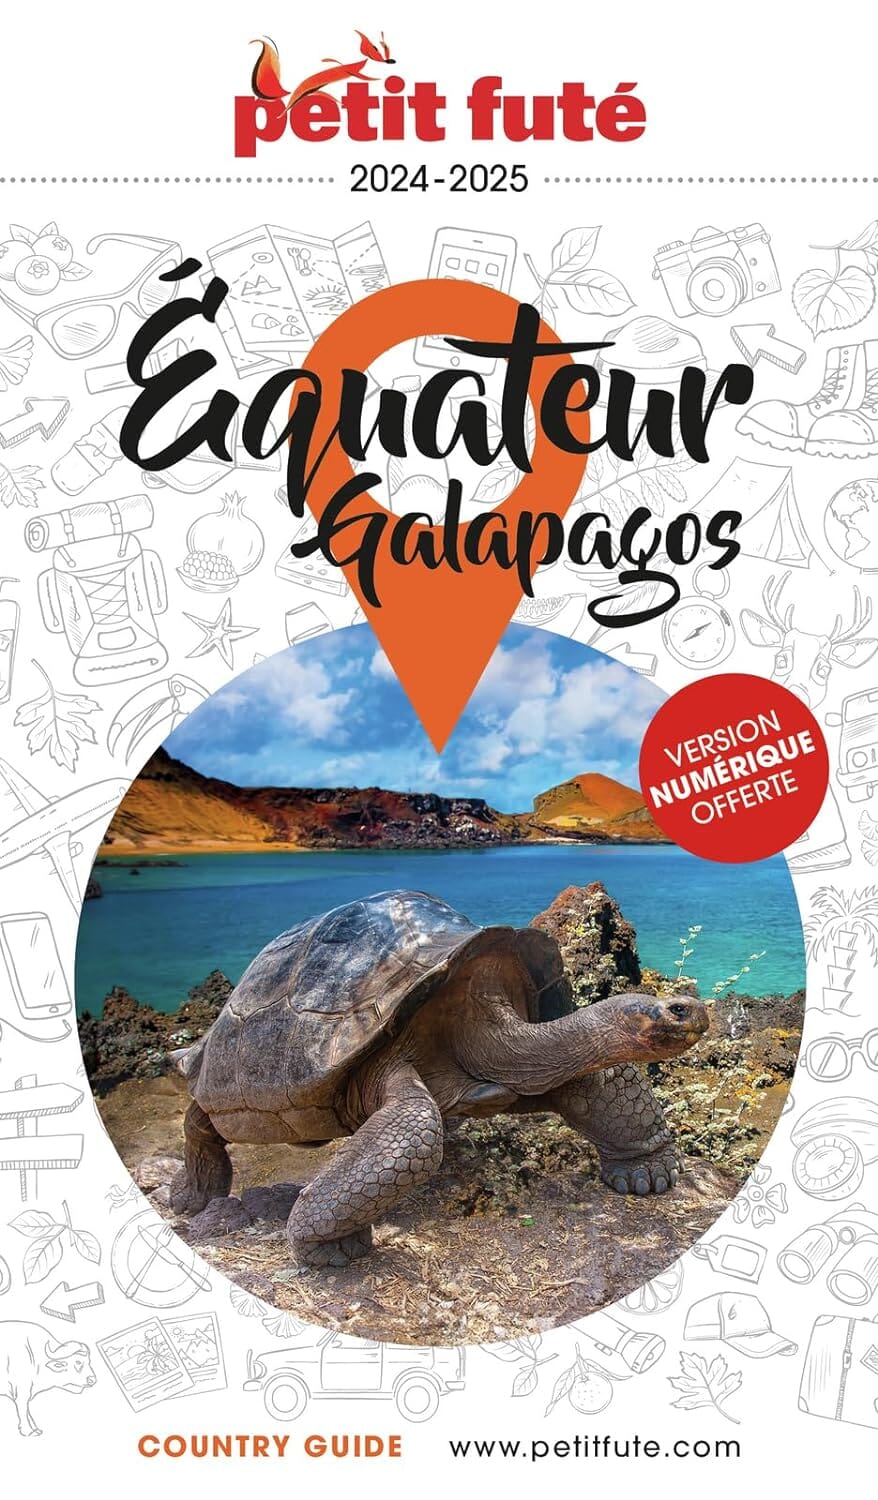 Guide de voyage - Equateur, Galapagos 2024/25 | Petit Futé guide de voyage Petit Futé 